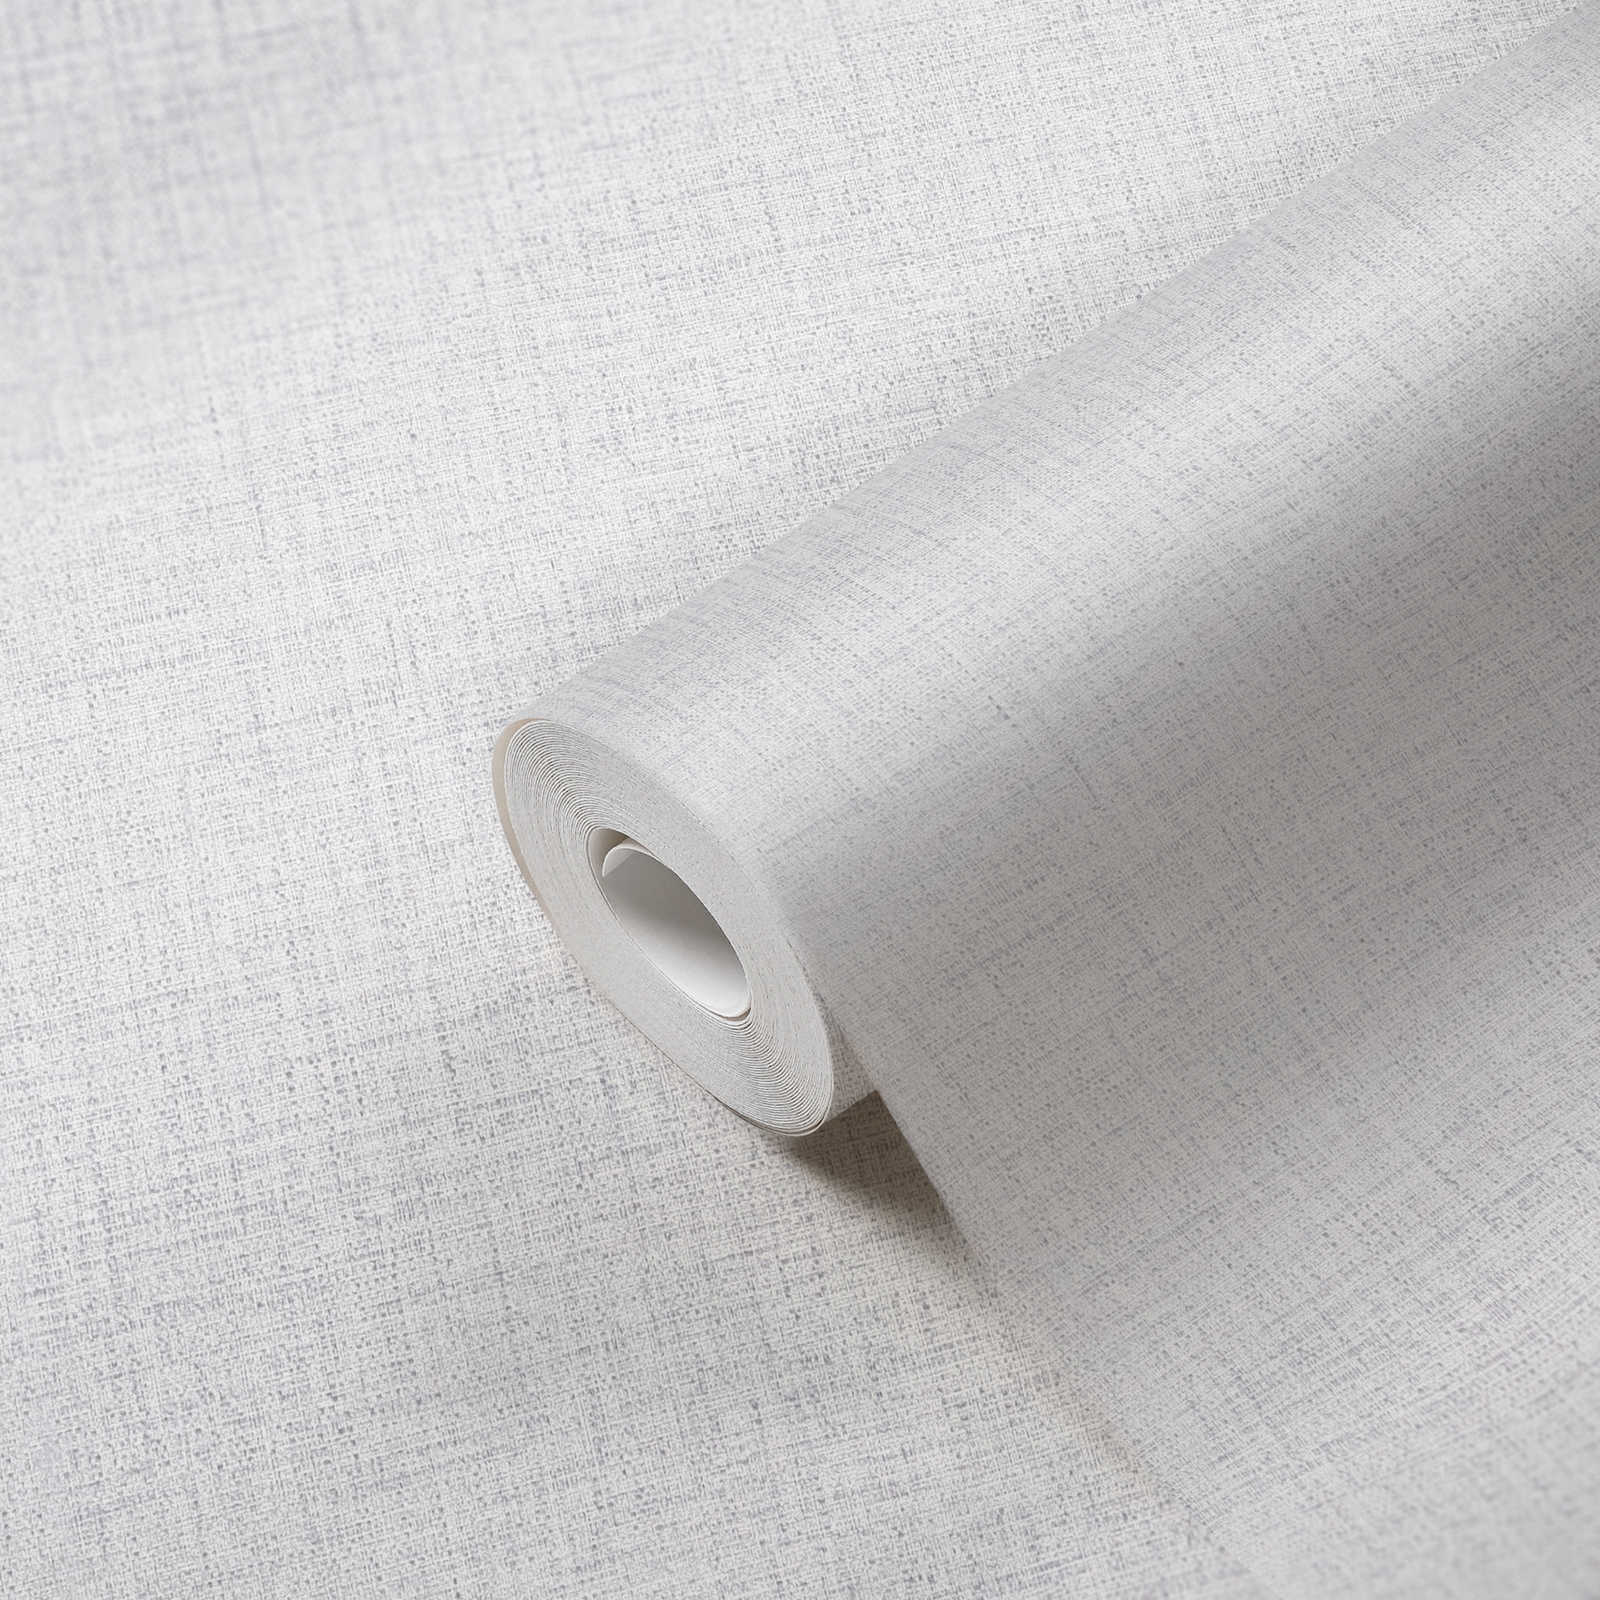             Non-woven wallpaper cream with textile optics & structure design
        